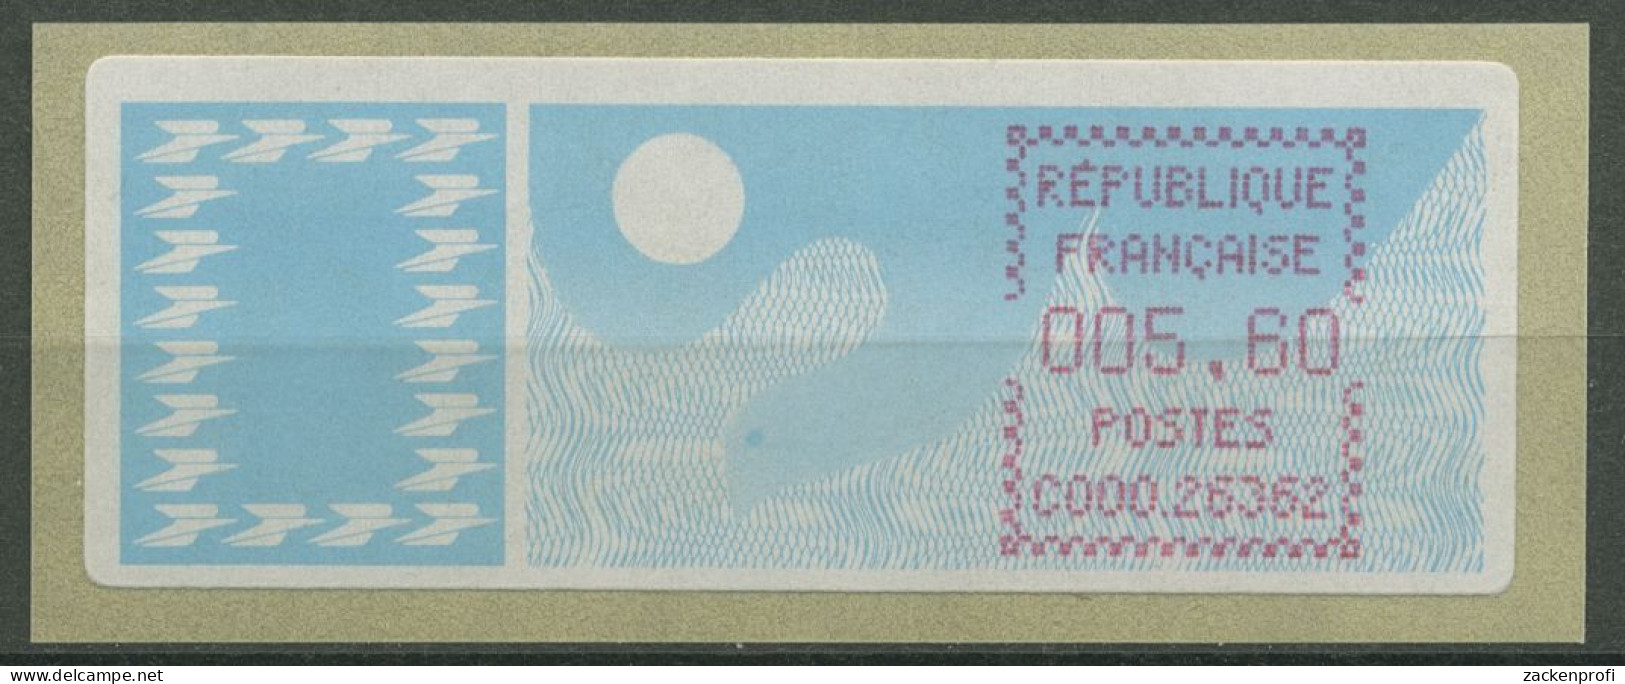 Frankreich ATM 1985 Taube Einzelwert ATM 6.1 Zd Postfrisch - 1985 « Carrier » Papier